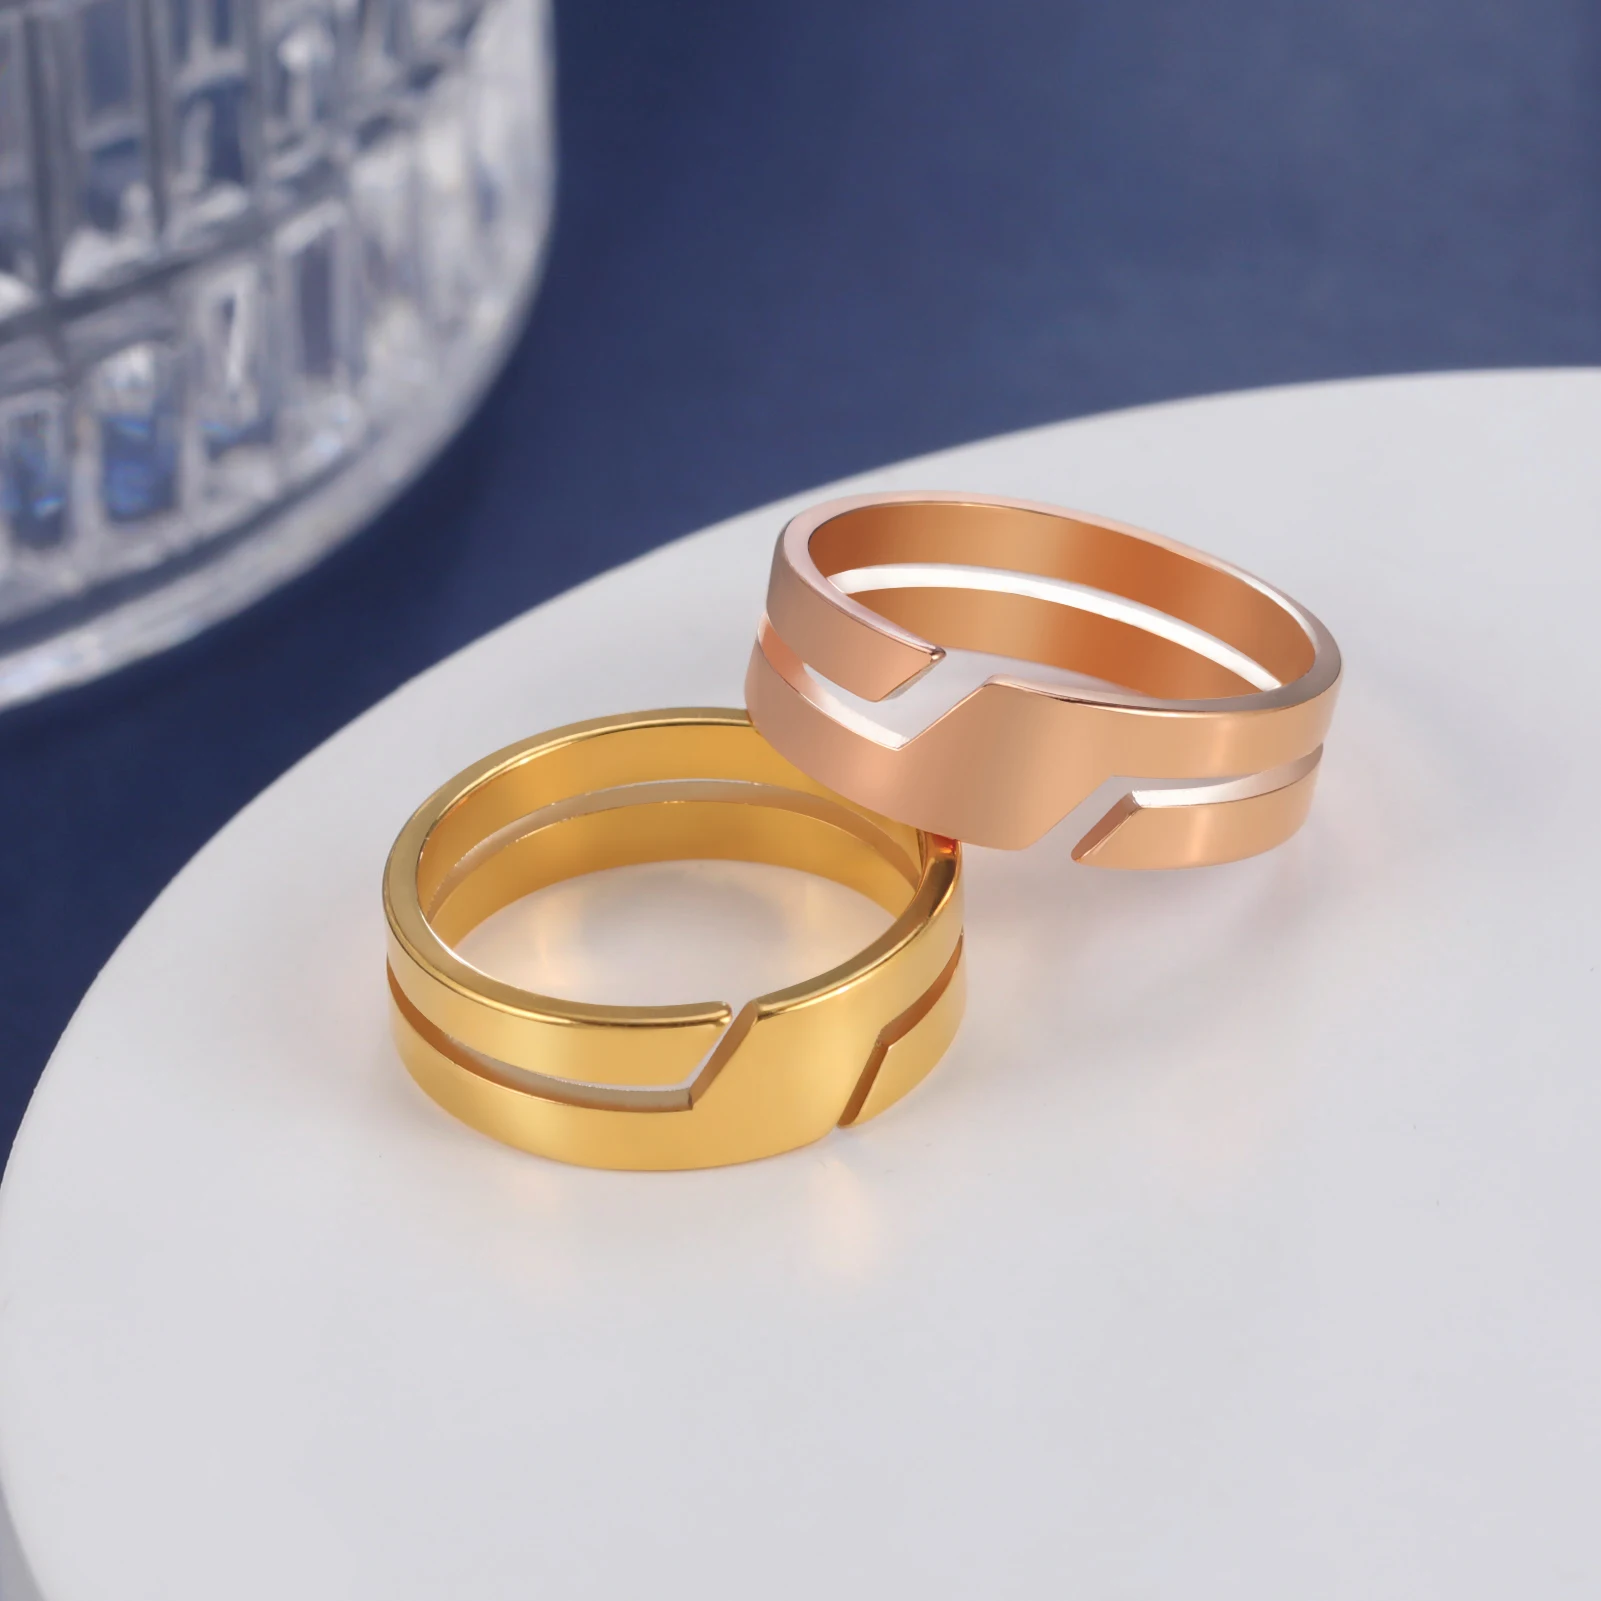 Новое парное кольцо для мужчин и женщин Мода Простые повседневные кольца на пальцах из нержавеющей стали Ювелирные изделия Подарок на годовщину помолвки - 2